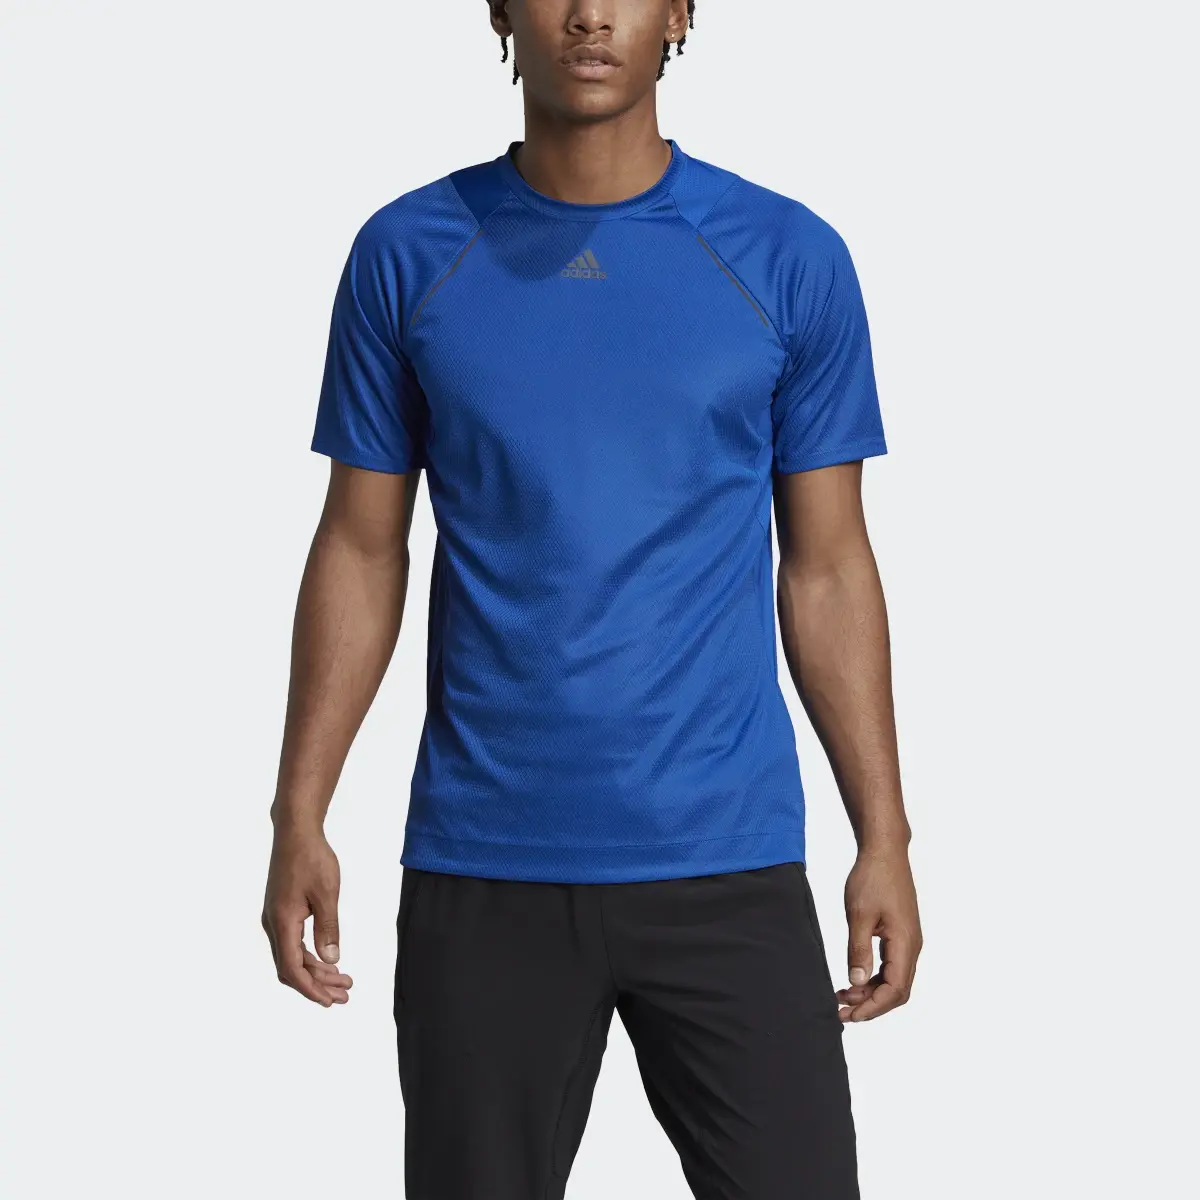 Adidas T-shirt de HIIT e Spinning. 1